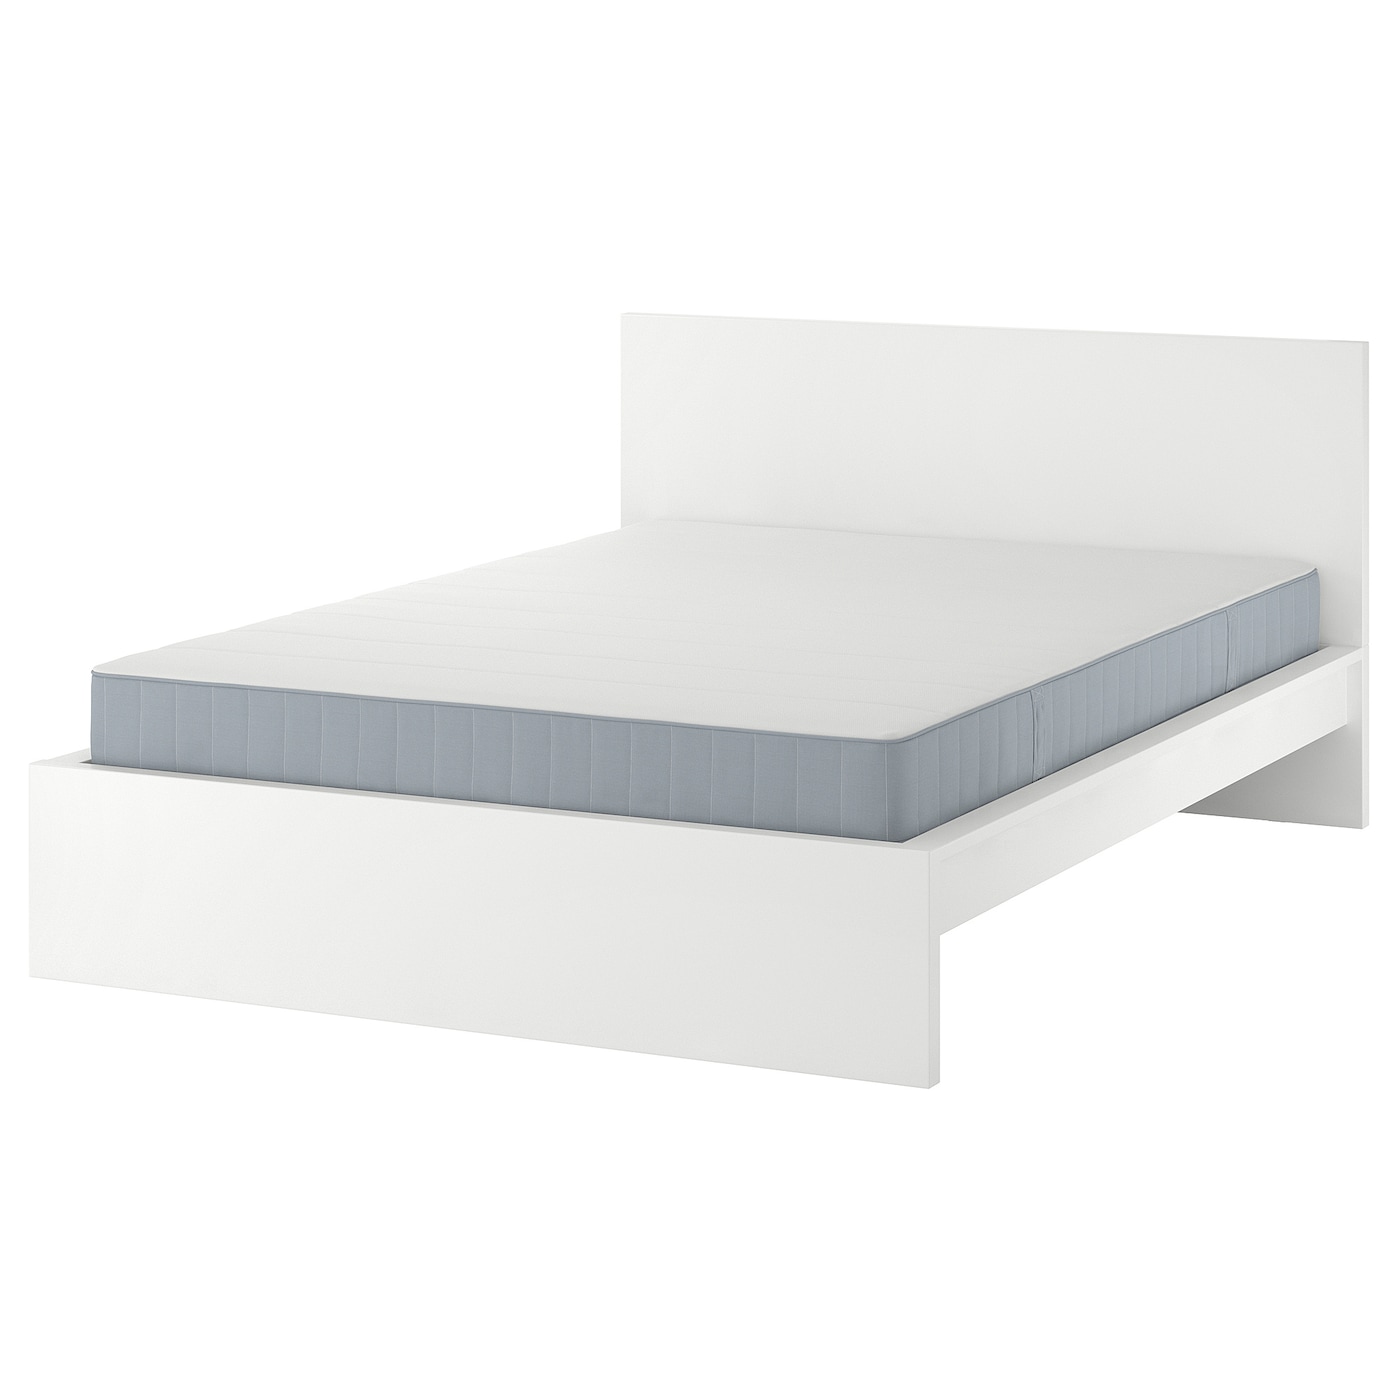 Кровать - IKEA MALM, 200х140 см, матрас средне-жесткий, белый, МАЛЬМ ИКЕА